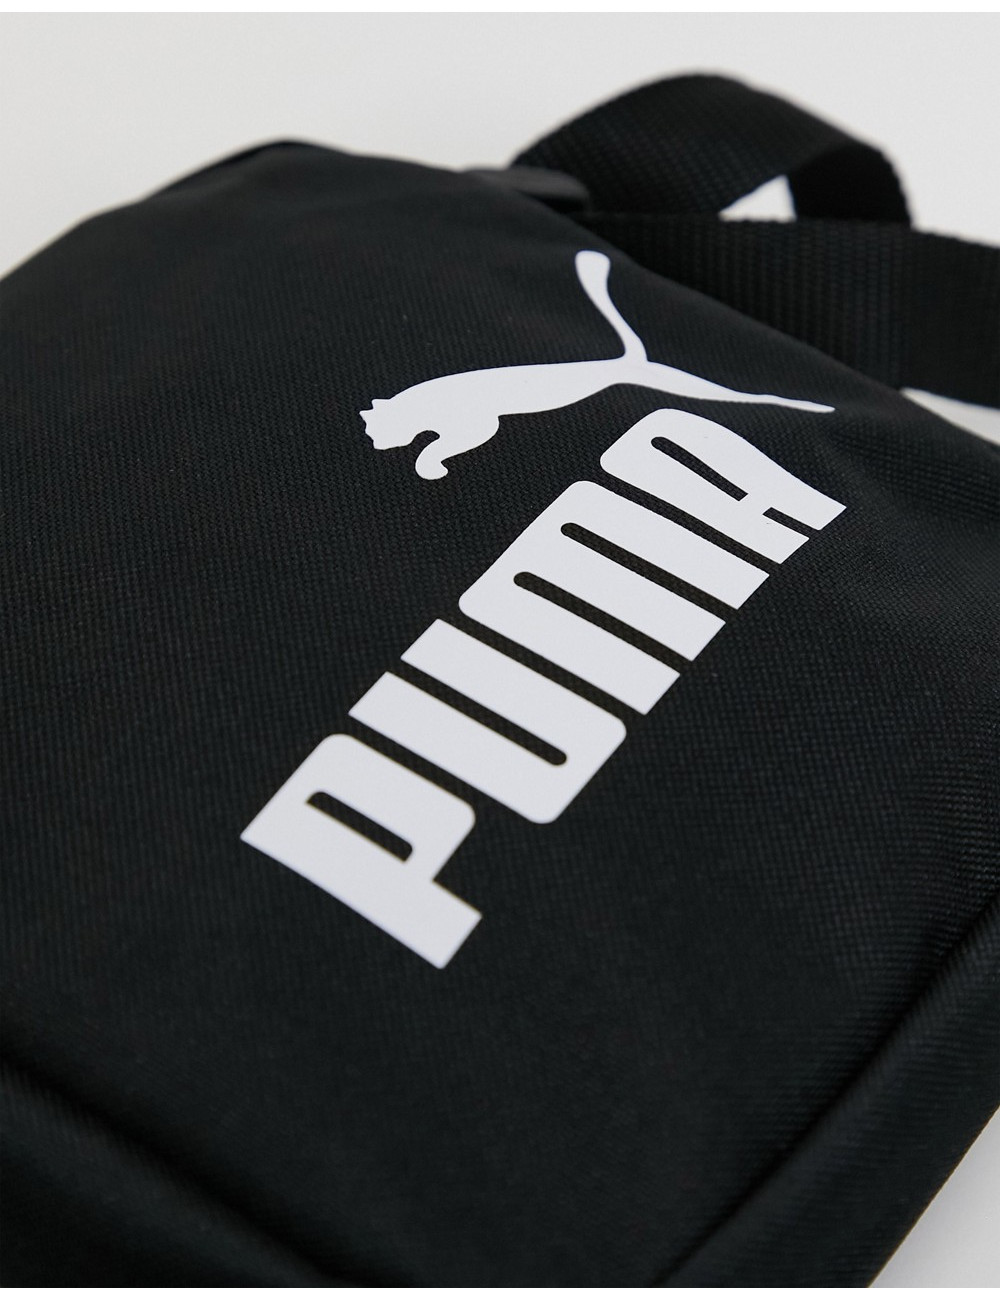 Puma no 1 logo portable bag...